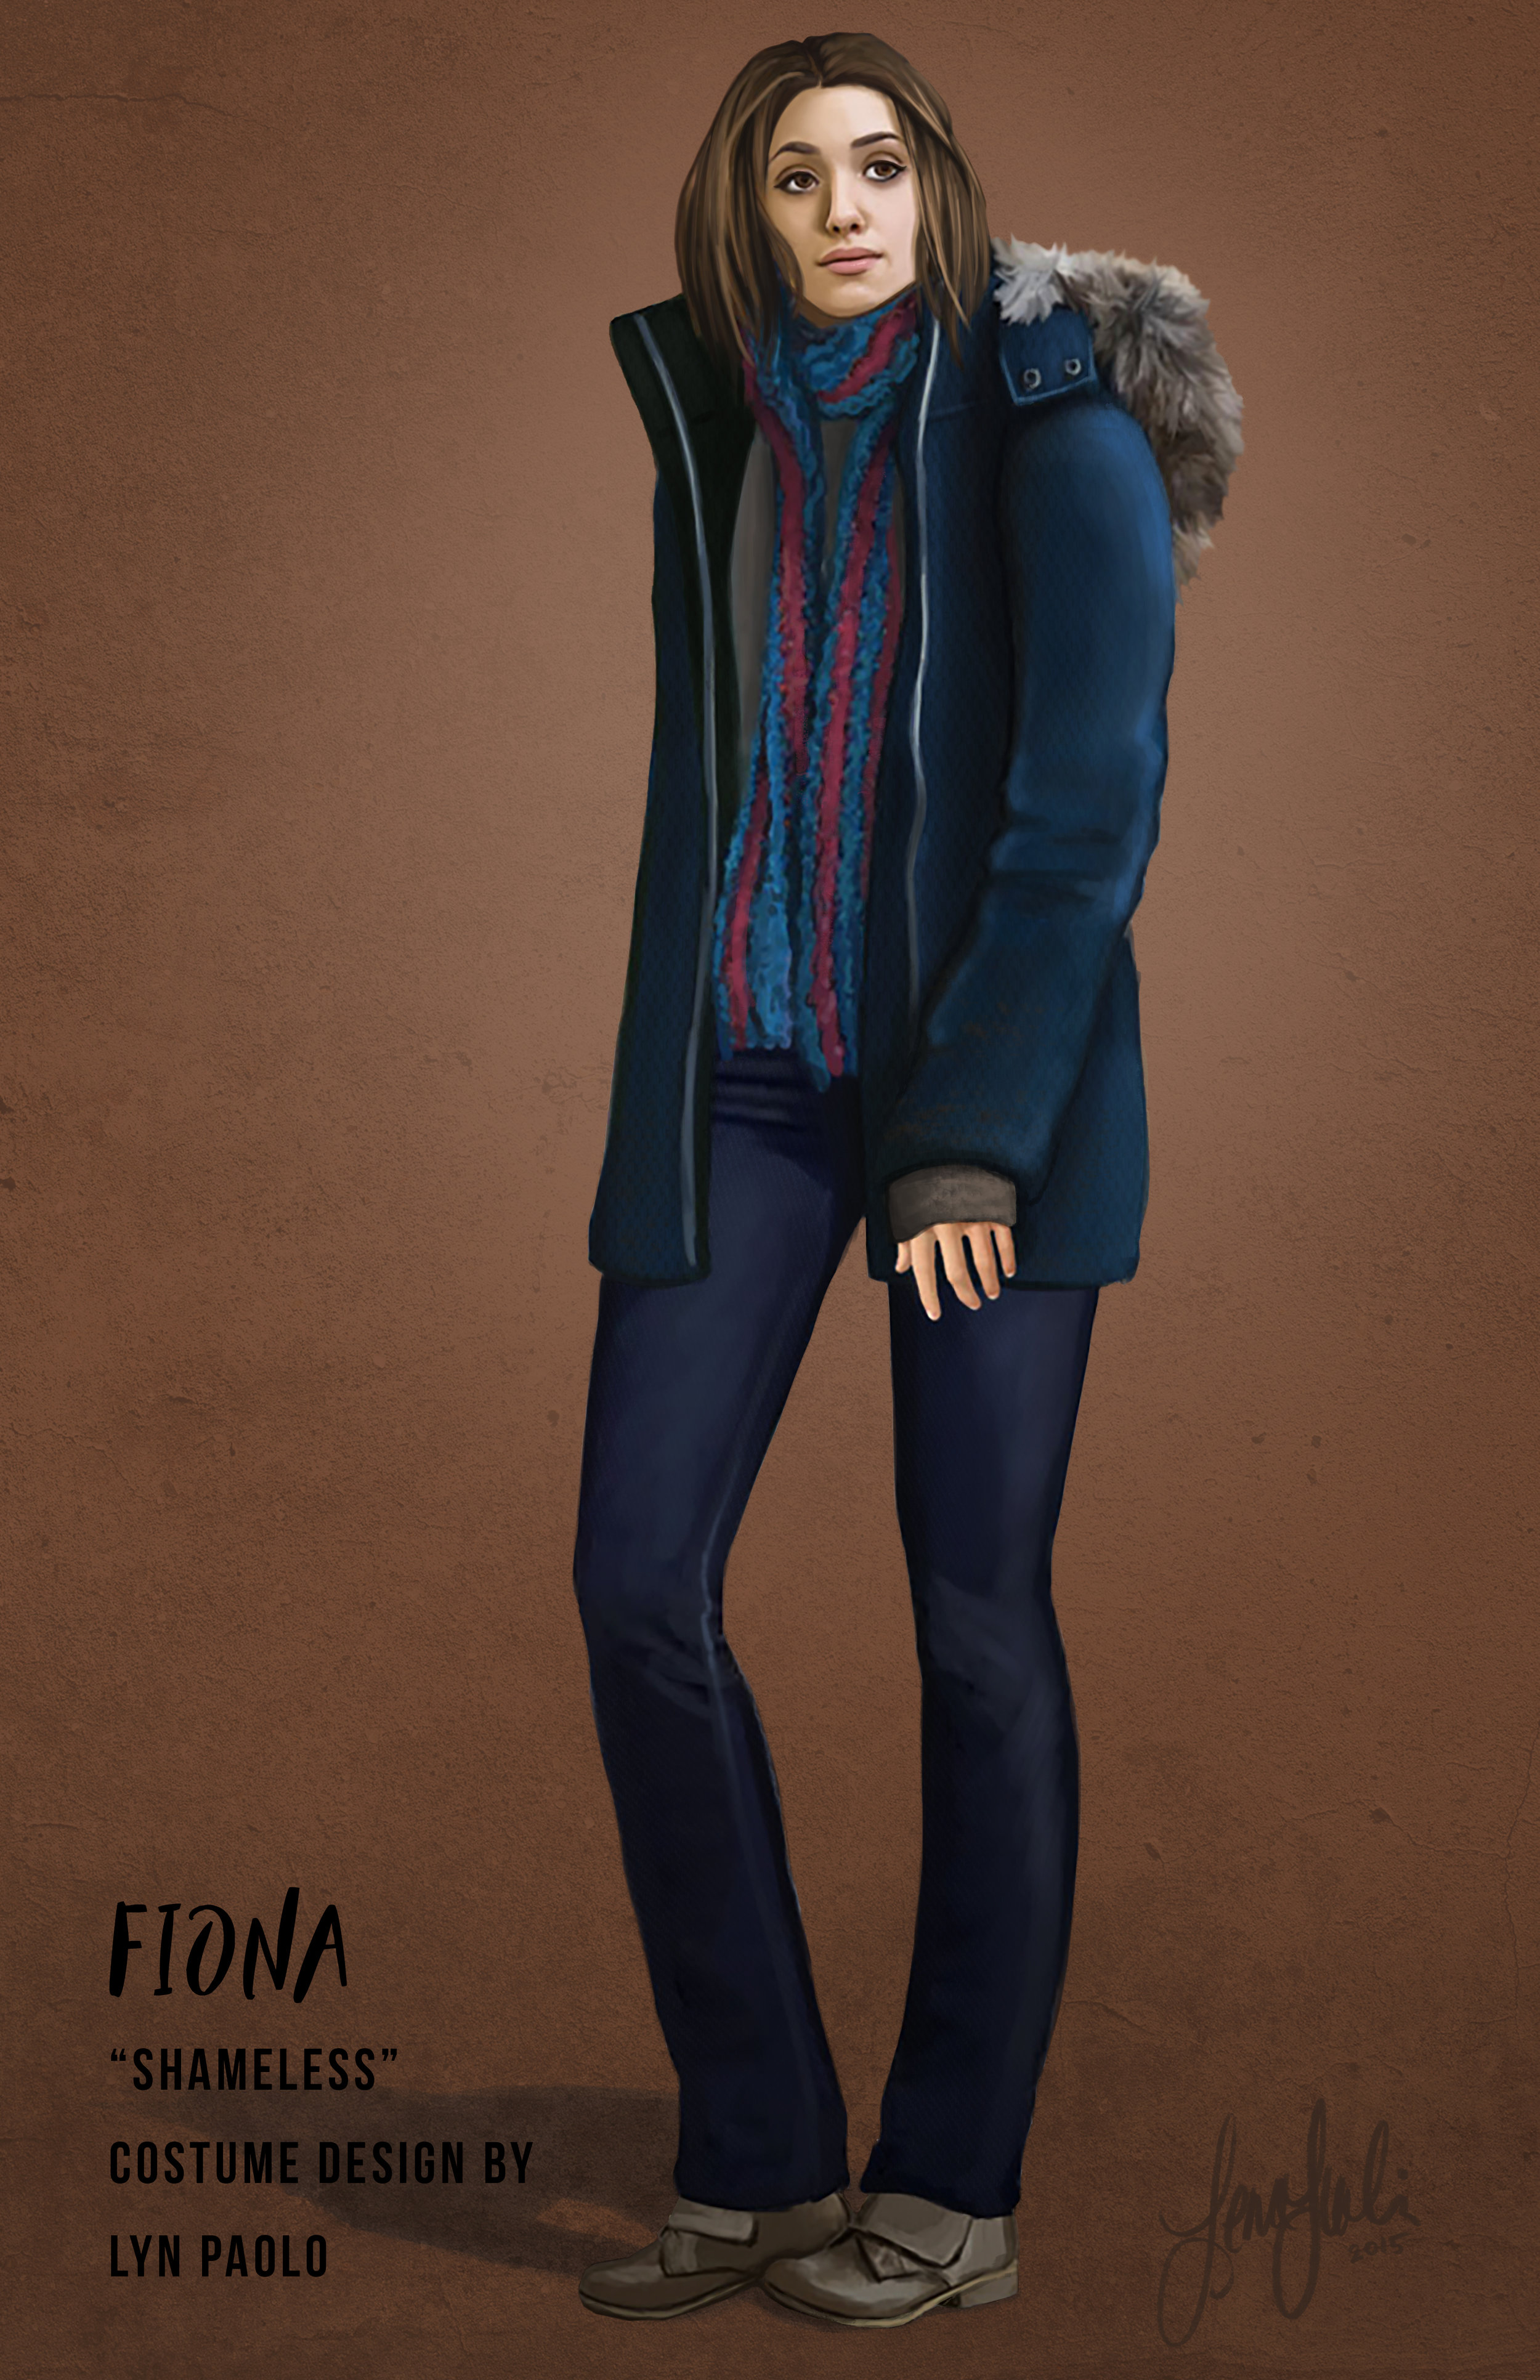 "Fiona" for Shameless, Costume Designer Lyn Paolo